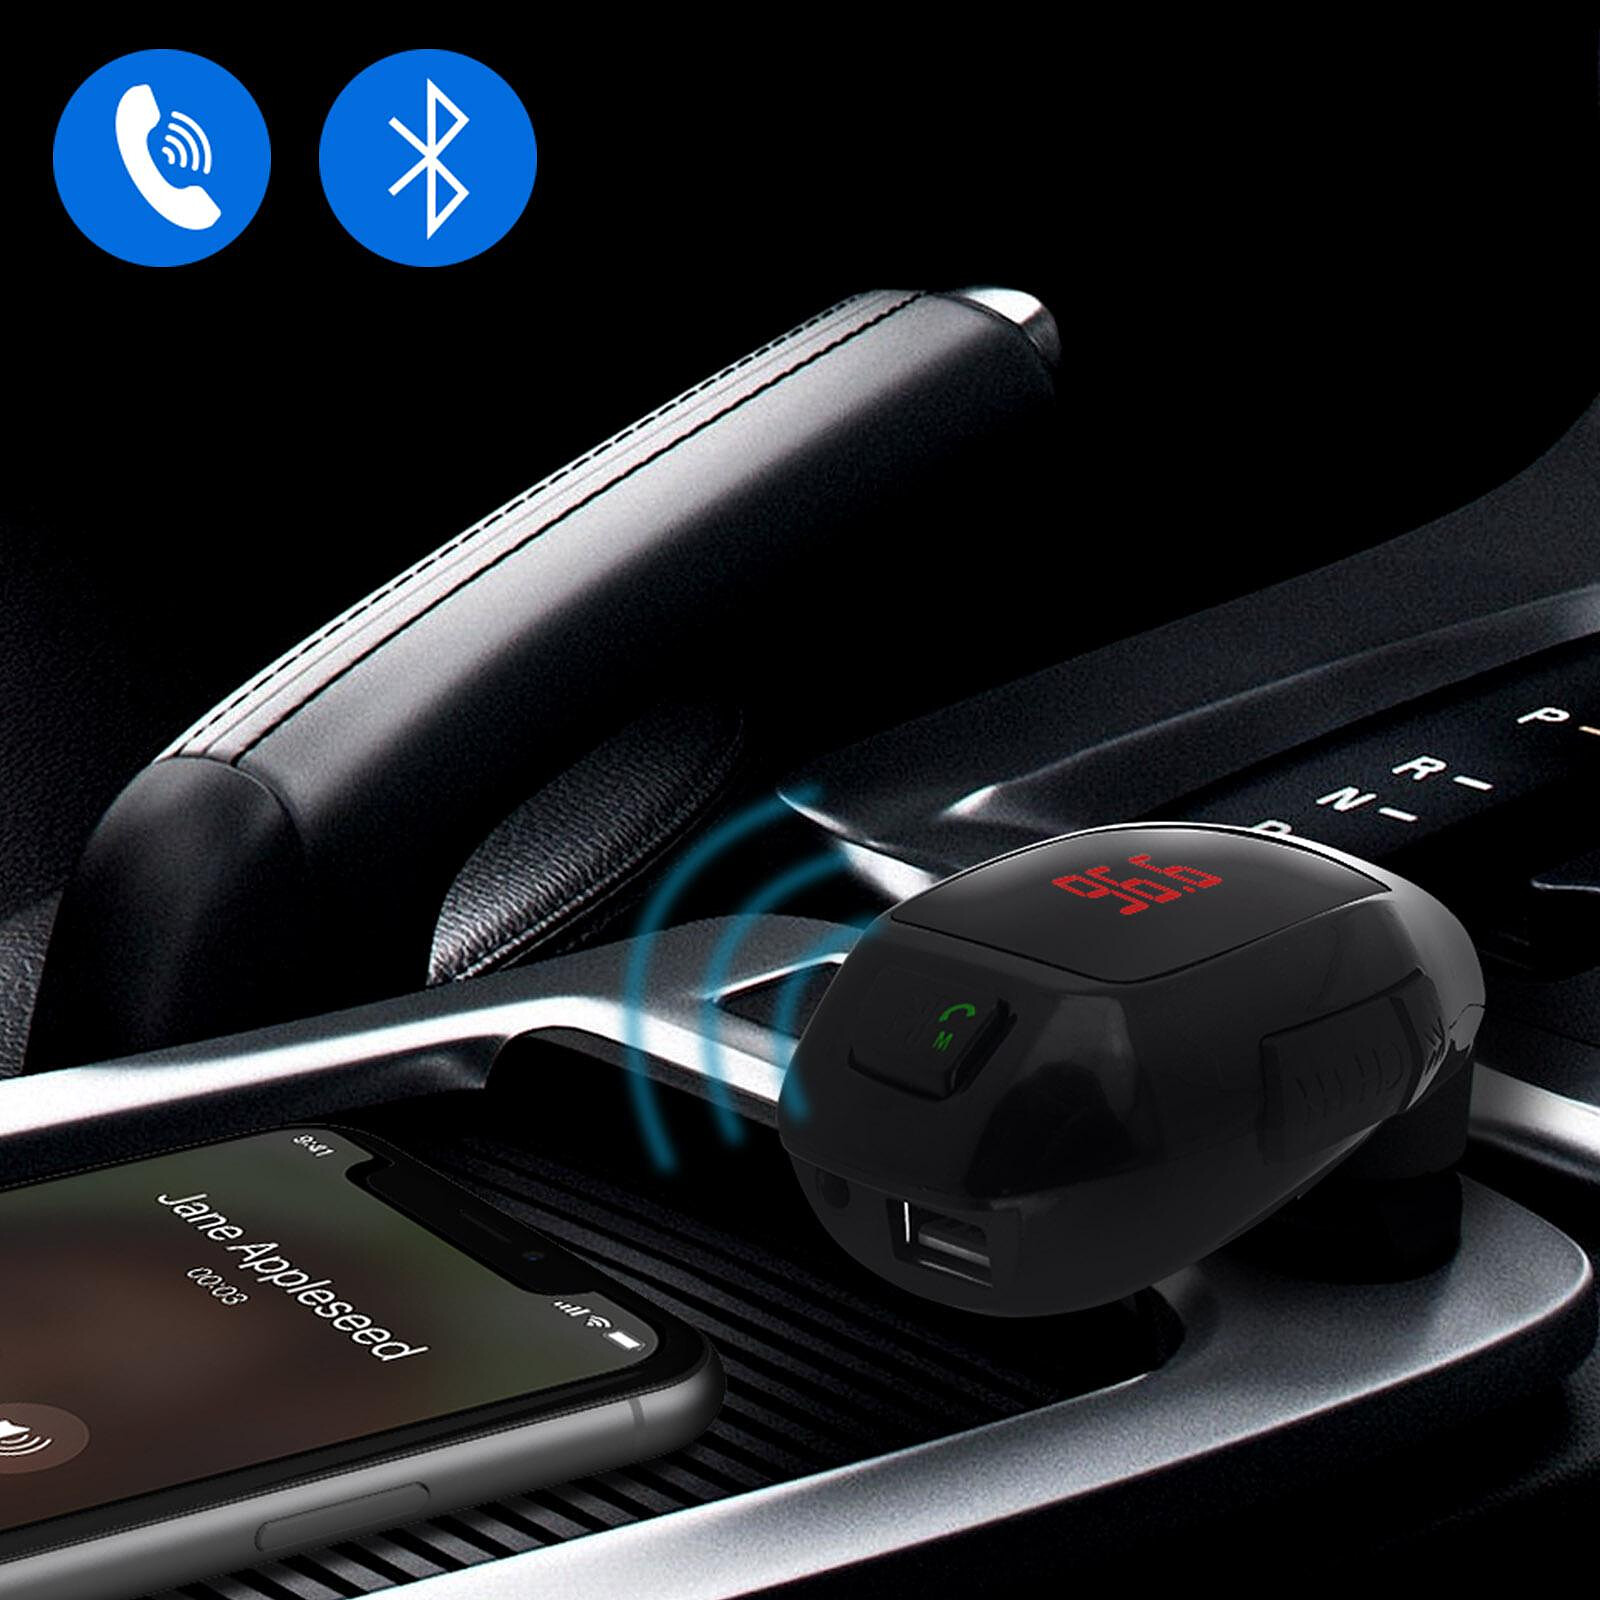 Avizar Kit mains libres Bluetooth pour voiture - acheter sur digitec